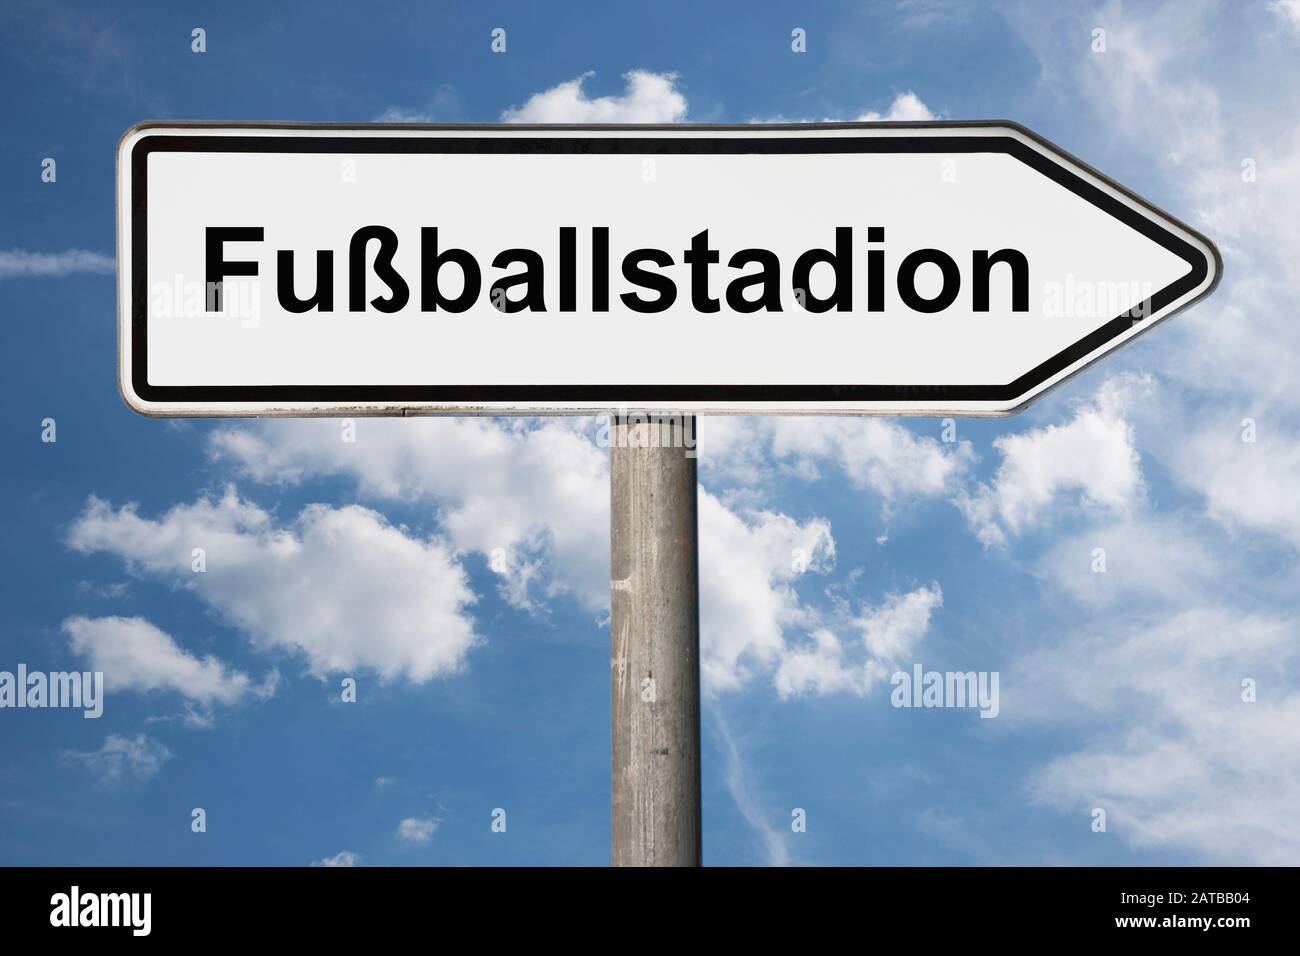 Foto de detalle de un cartel con la inscripción Fußballstadion (estadio de fútbol) Foto de stock